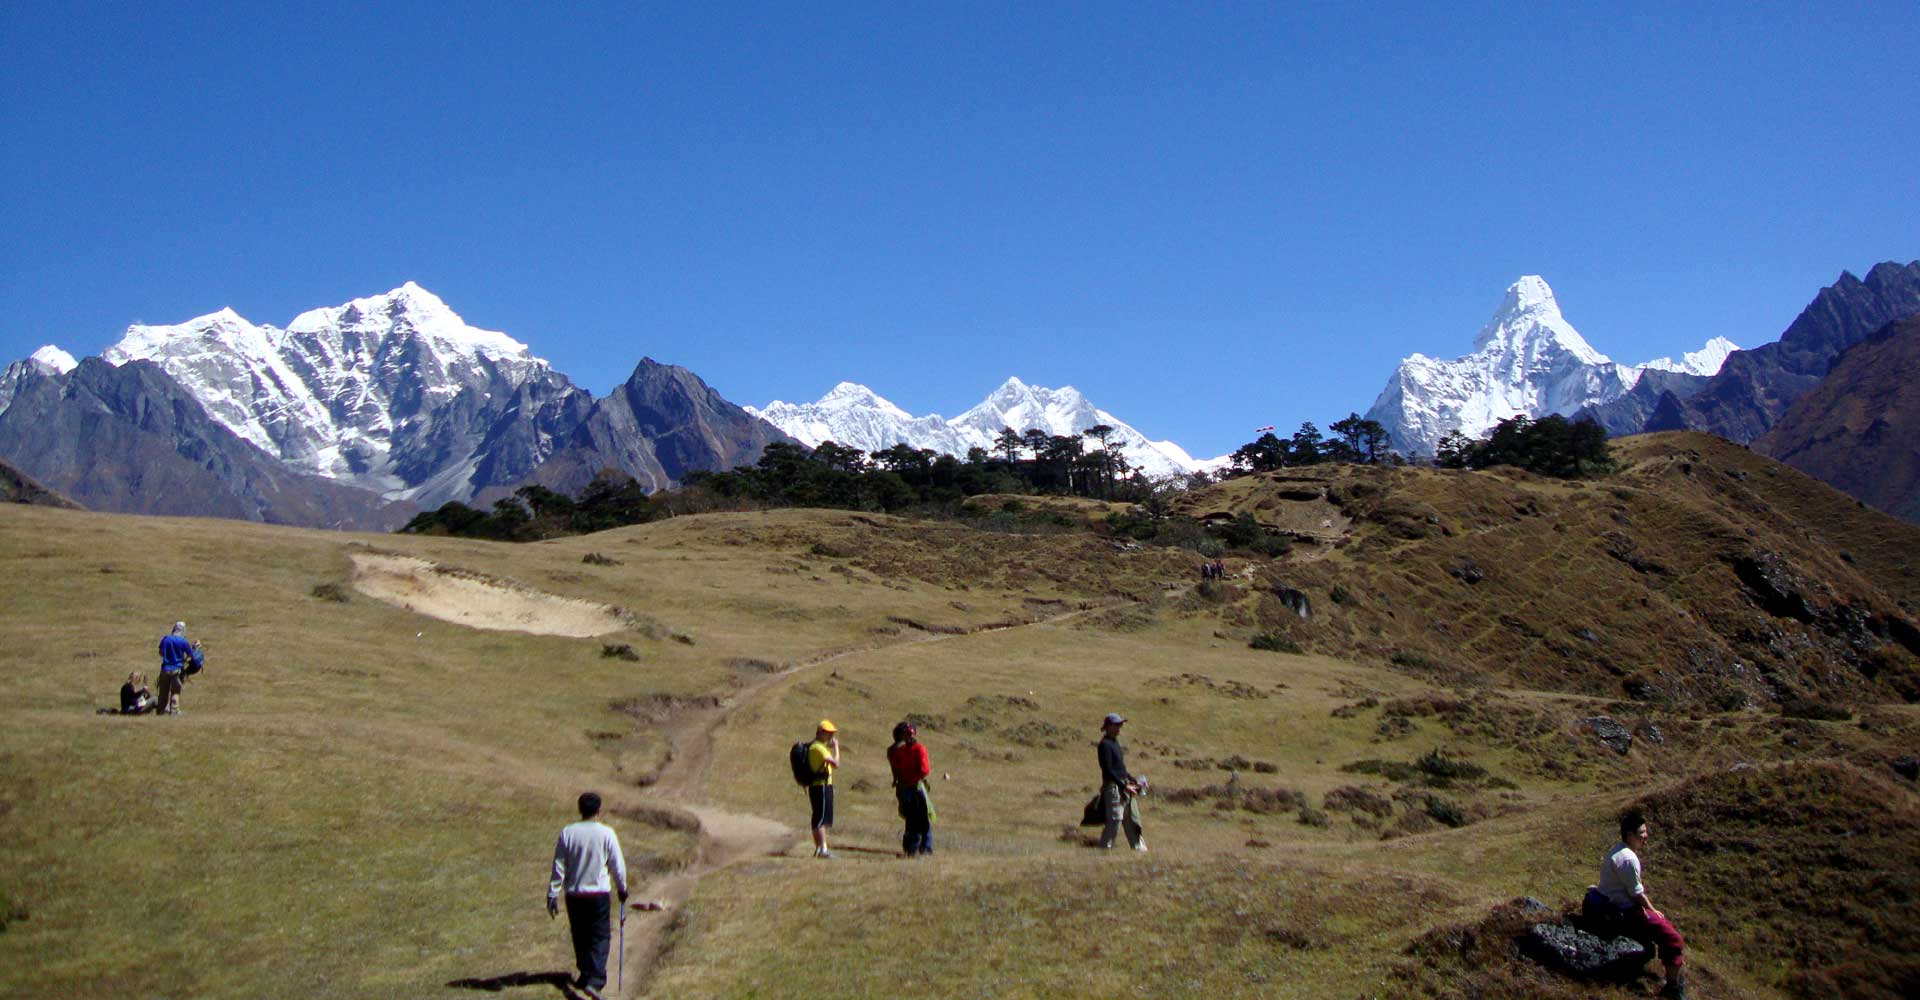 Trekking in Nepal - Everest base camp trek